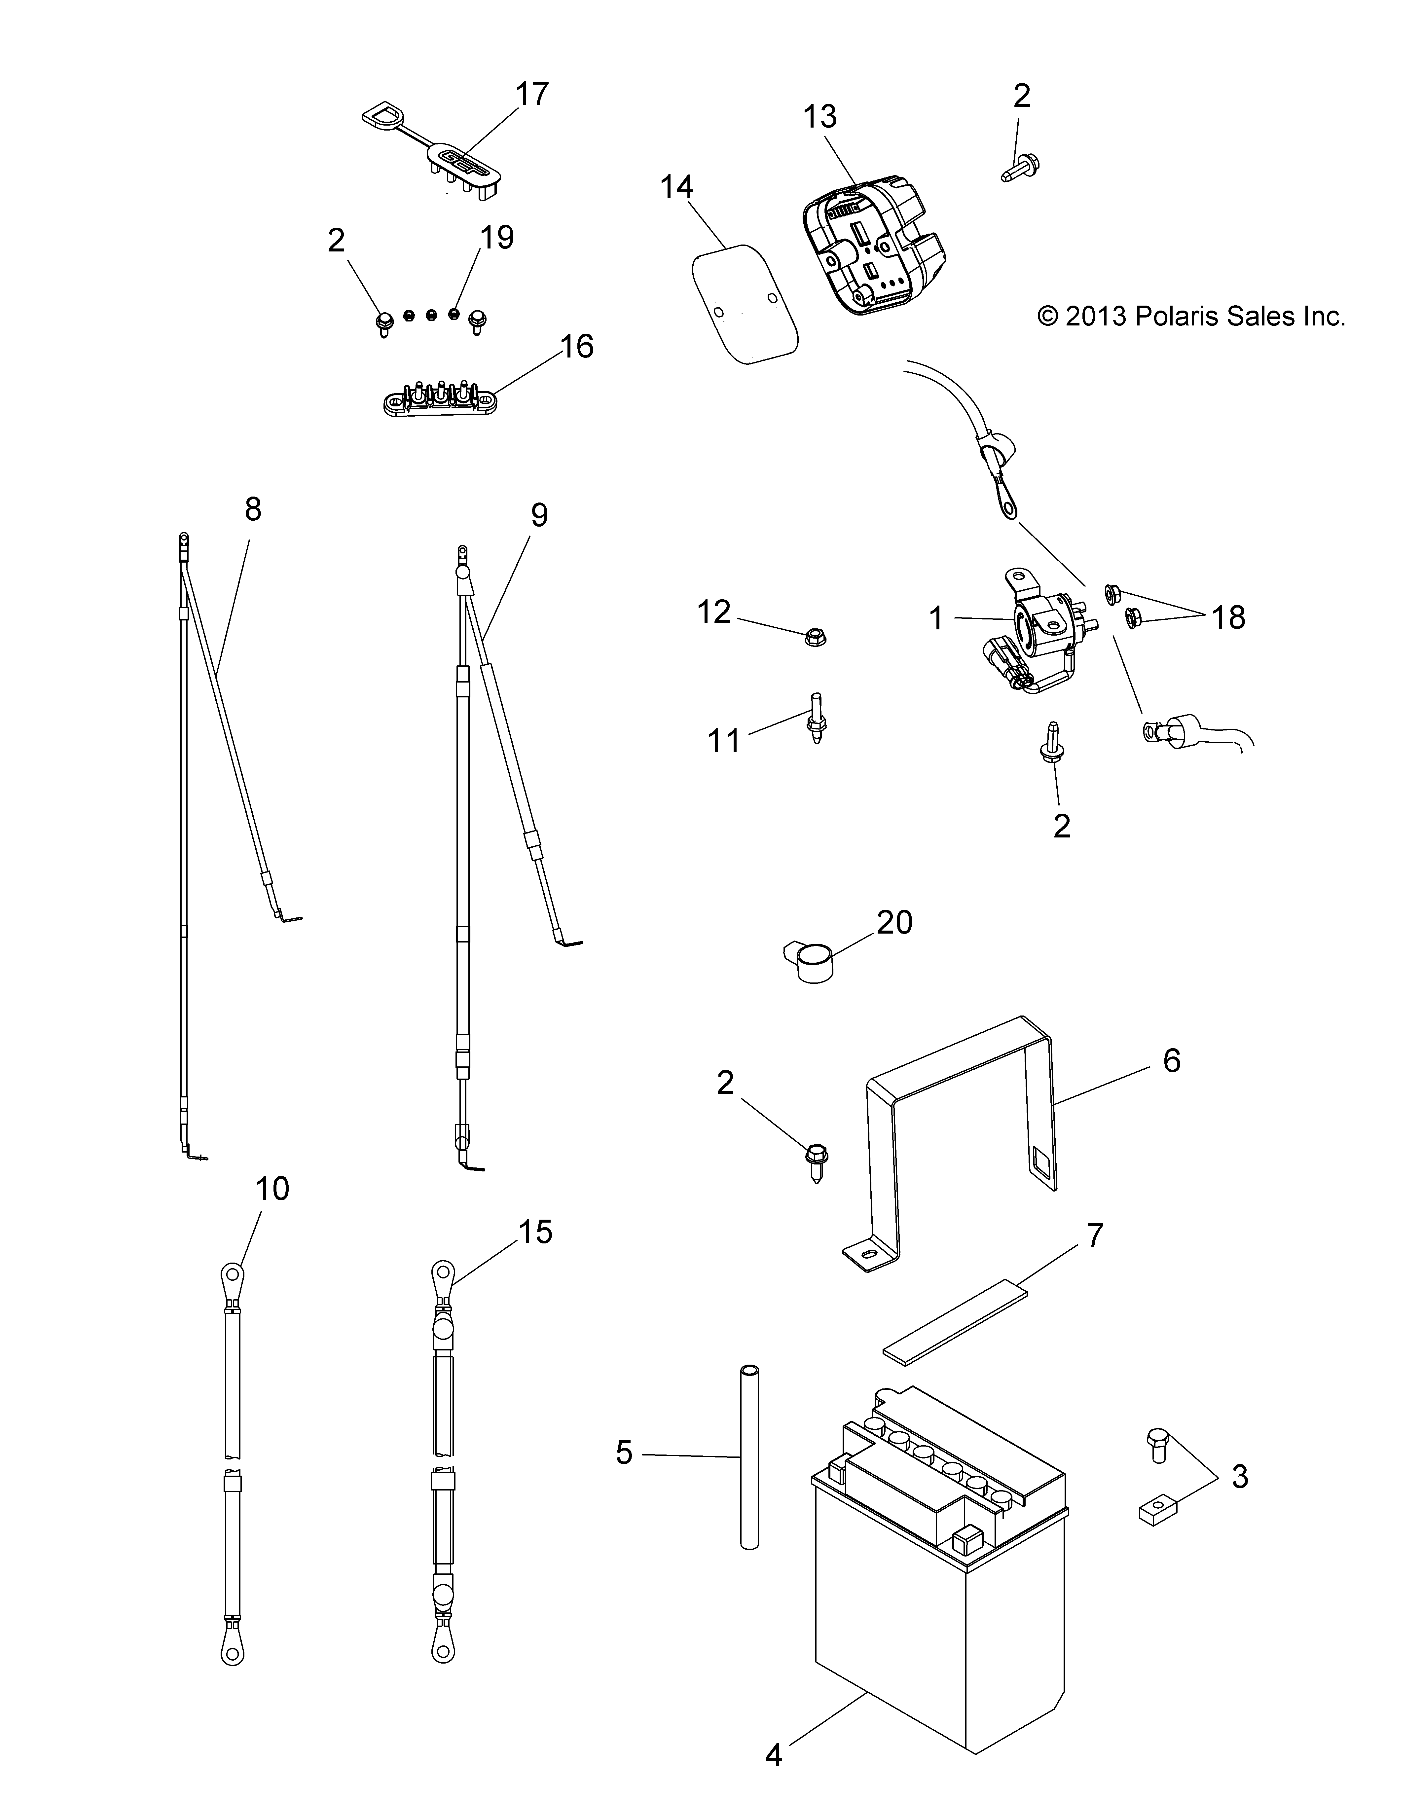 Foto diagrama Polaris que contem a peça 4013904